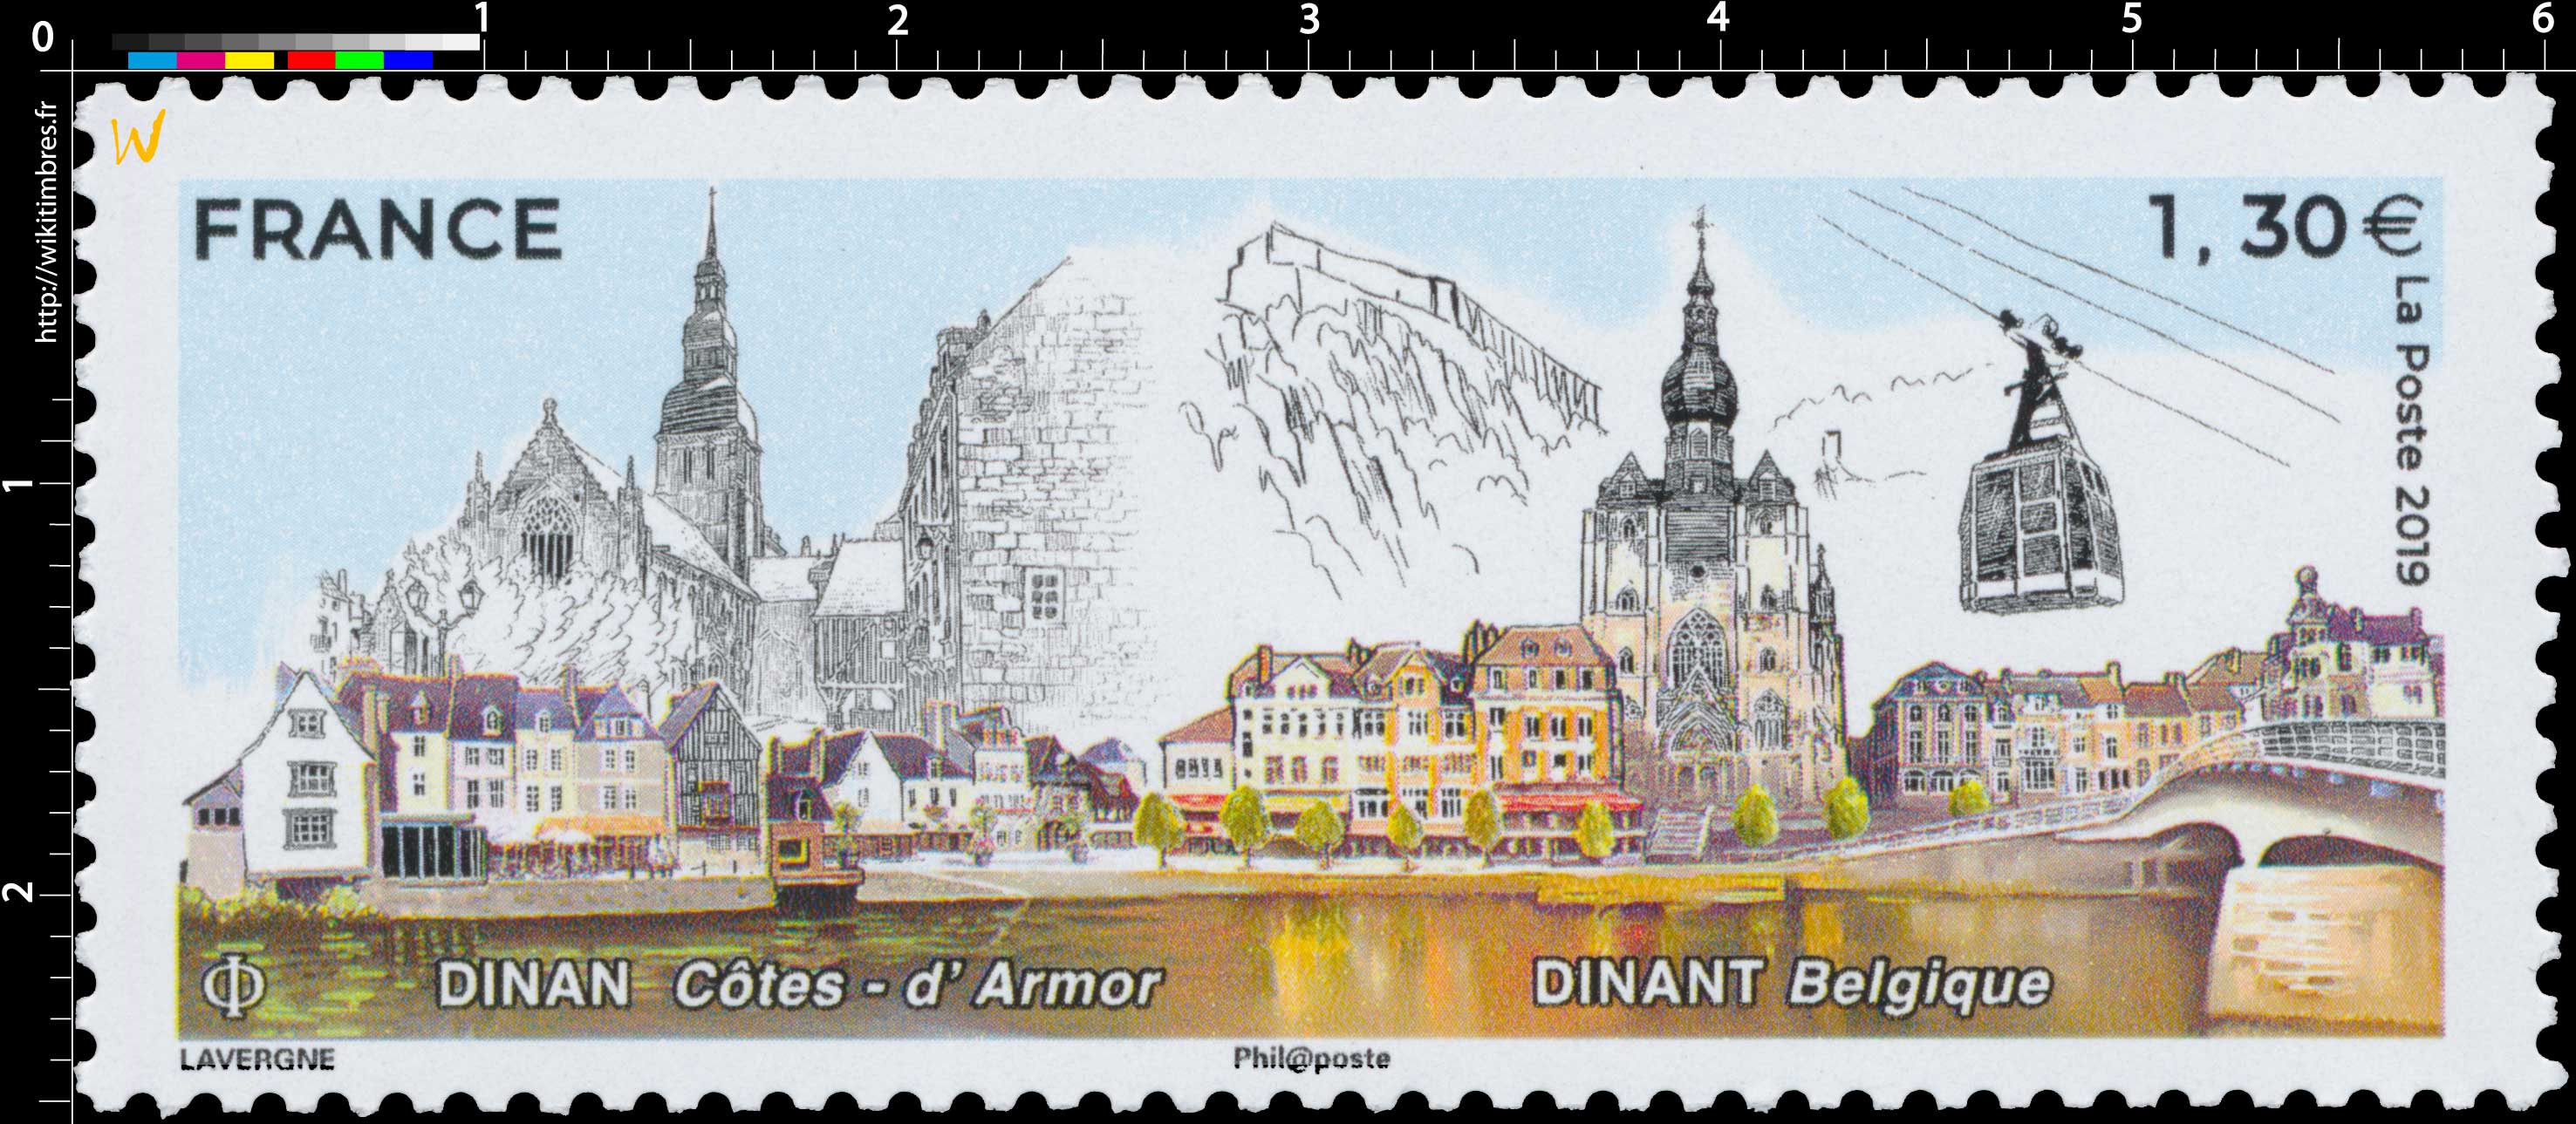 DINAN Côtes-d'Armor - DINANT Belgique